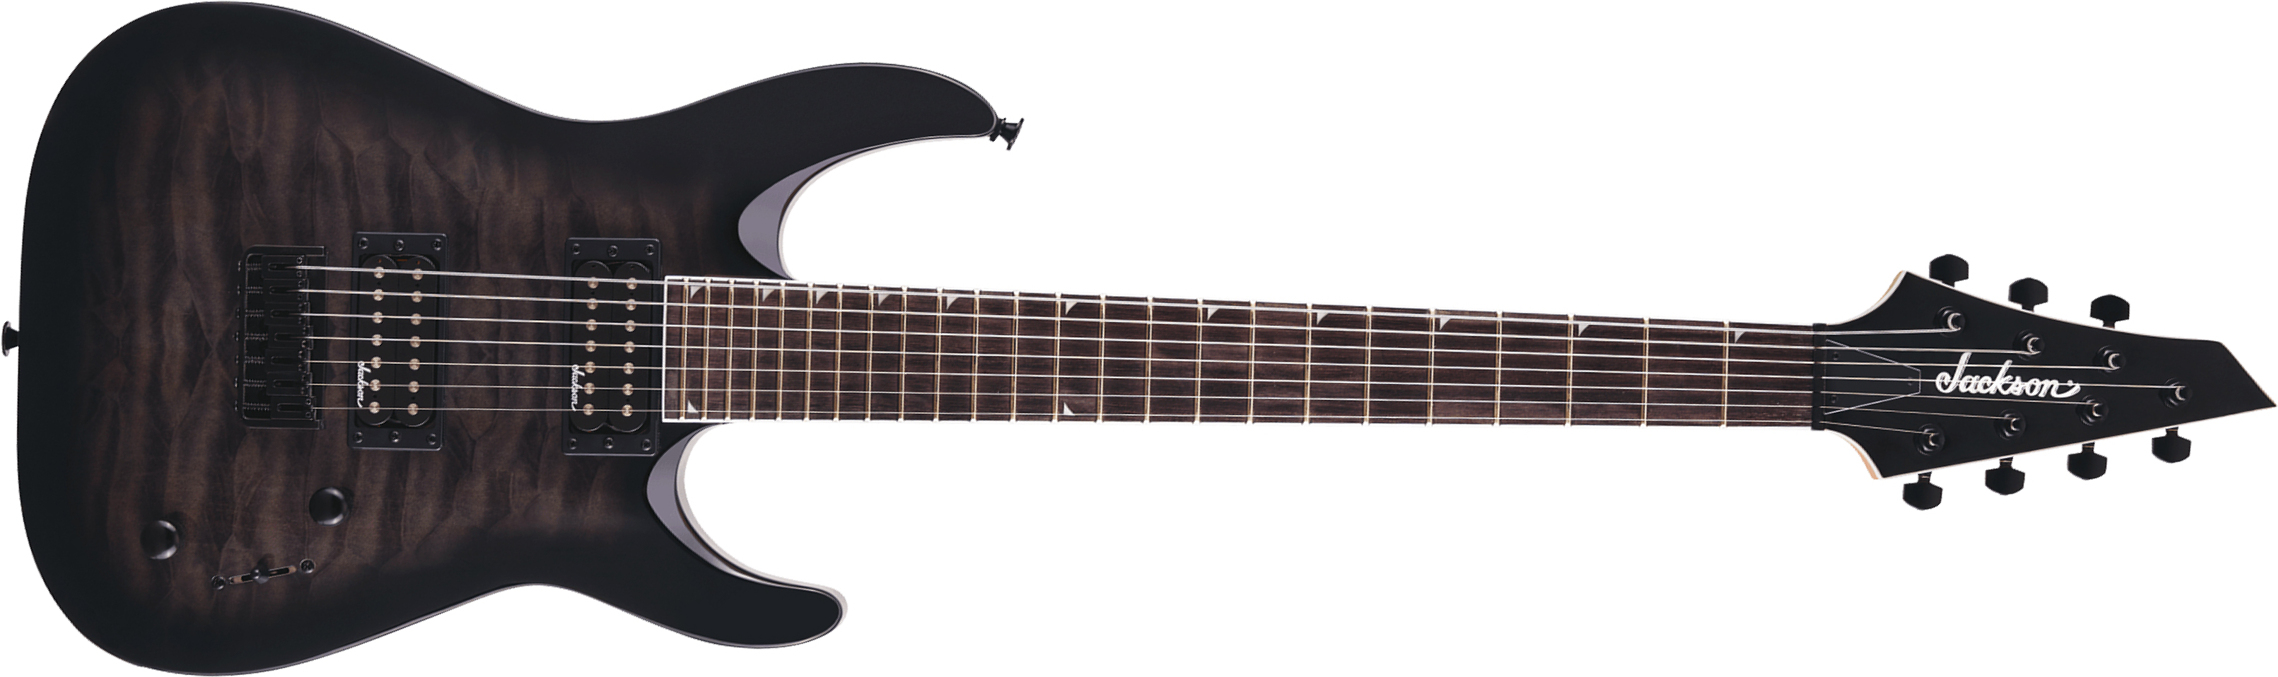 Jackson Dinky Js22q-7 Dka Ht Arch Top 2h Ht Ama - Transparent Black Burst - 7 string electric guitar - Main picture